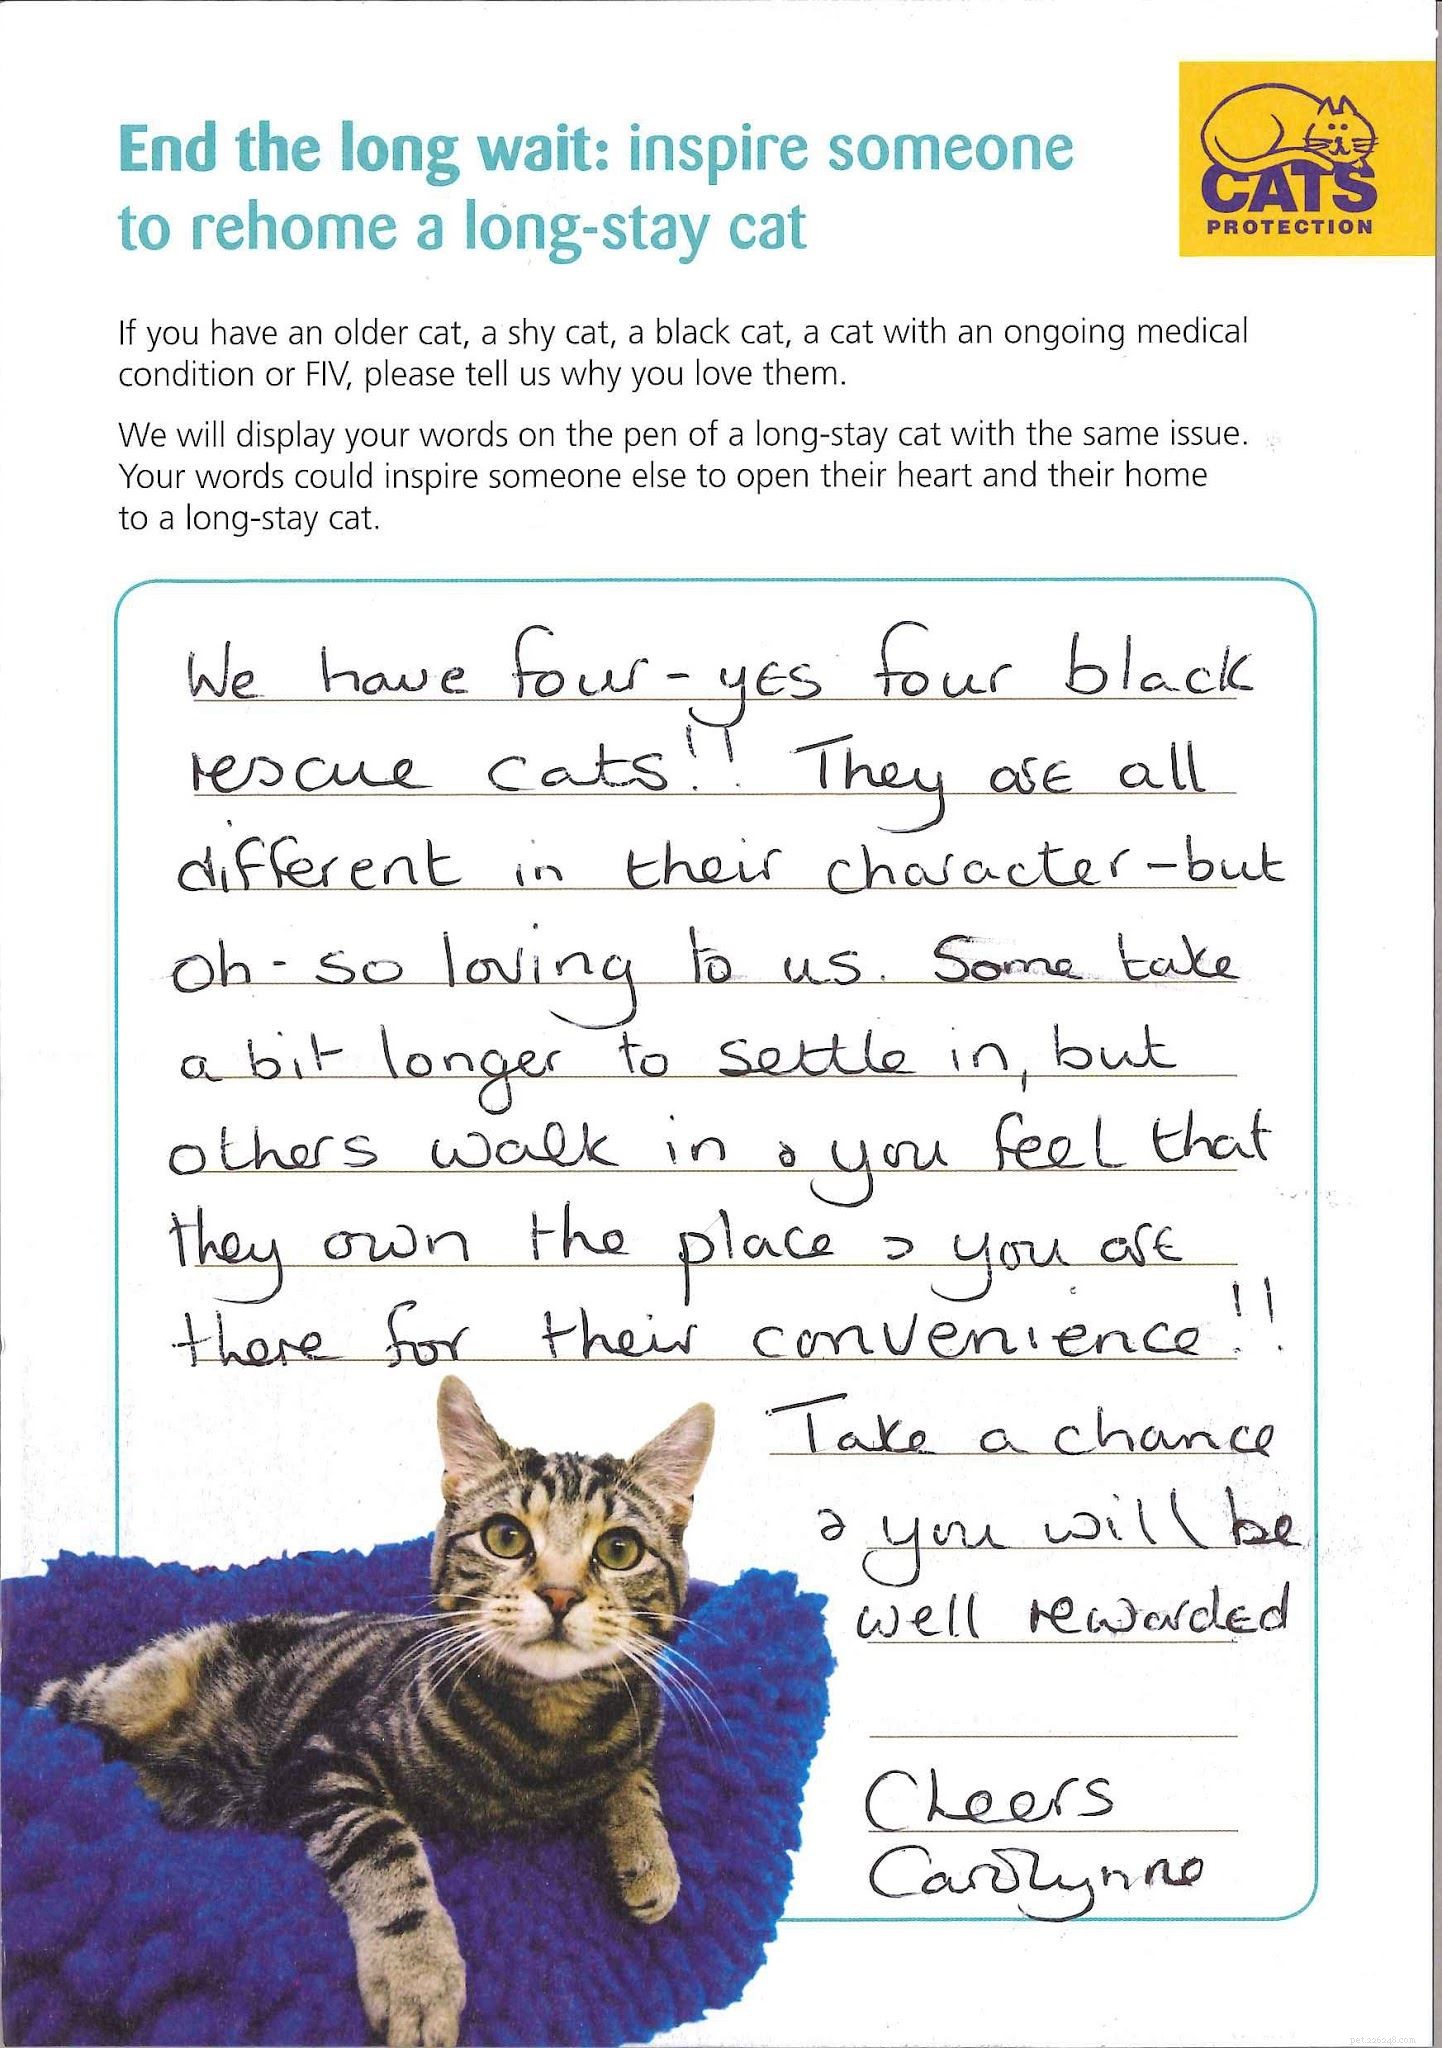 Le tue storie di gatti che erano in Cats Protections si prendono cura per molto tempo, ma ora sono felicemente sistemati a casa.